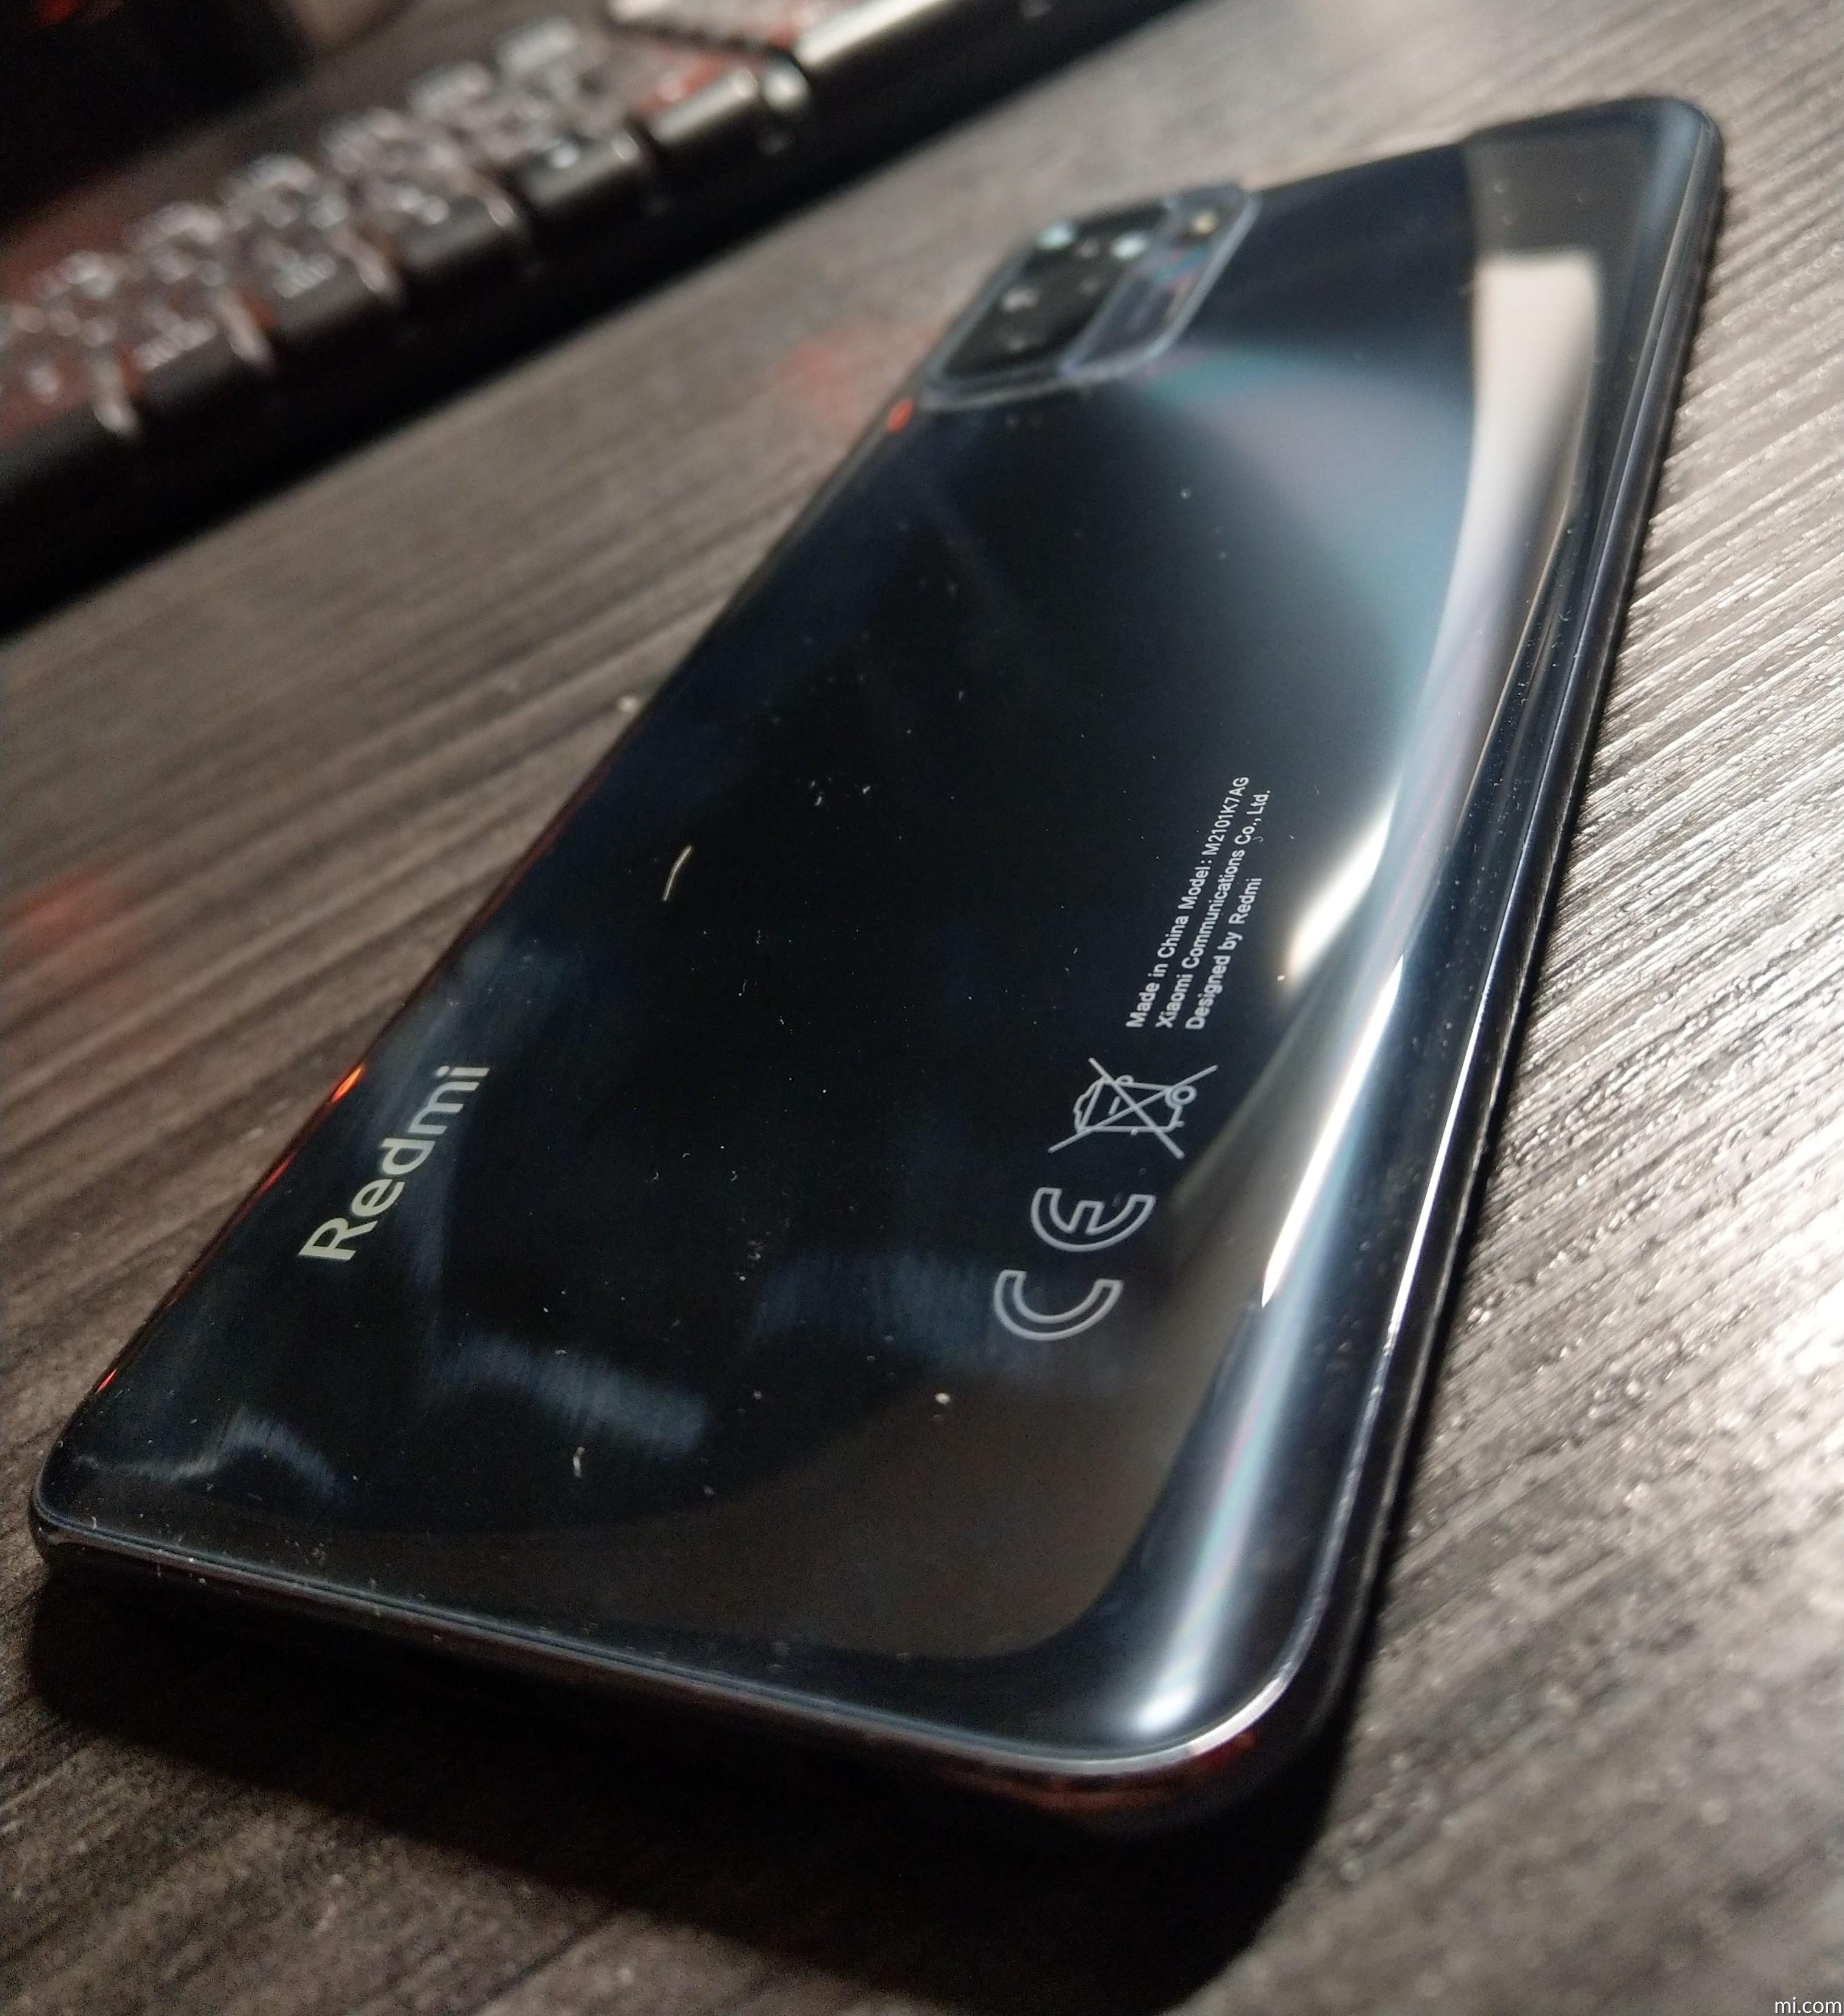 Redmi Note 10 5G丨Xiaomi France丨